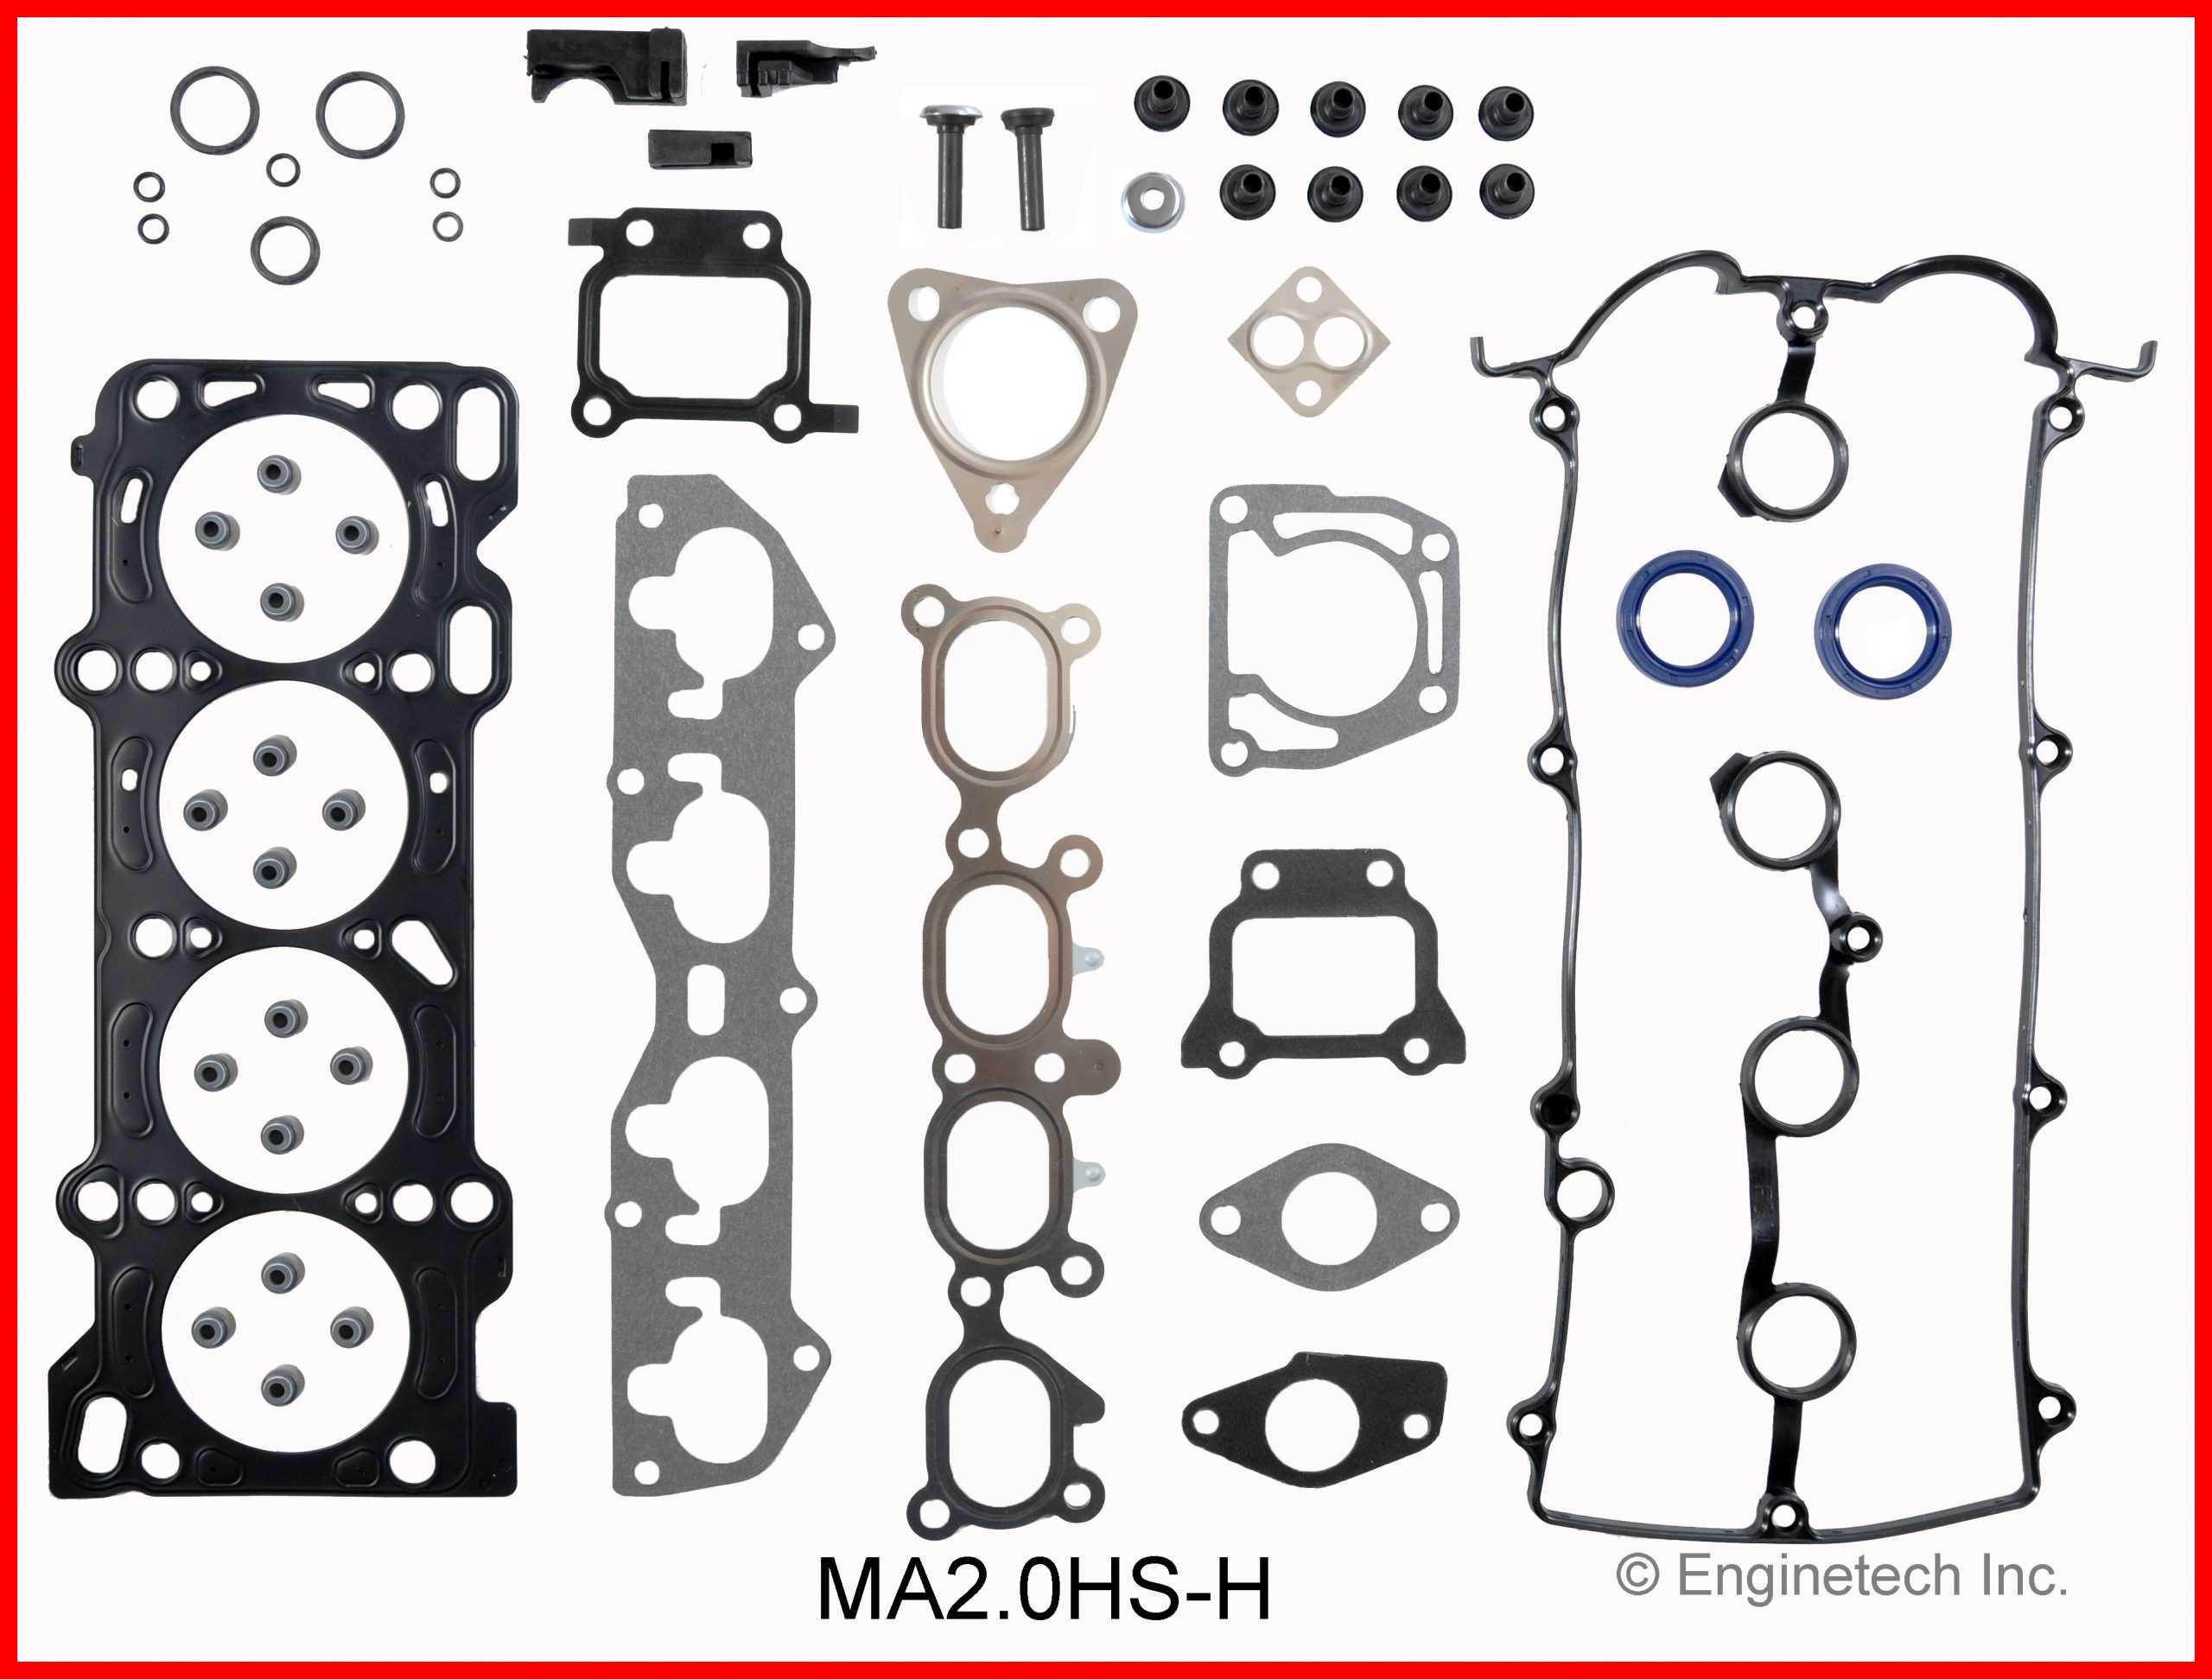 Head Gasket Set Bolt Kit Fits 00-03 Mazda 626 Protege 2.0L DOHC 16v FS